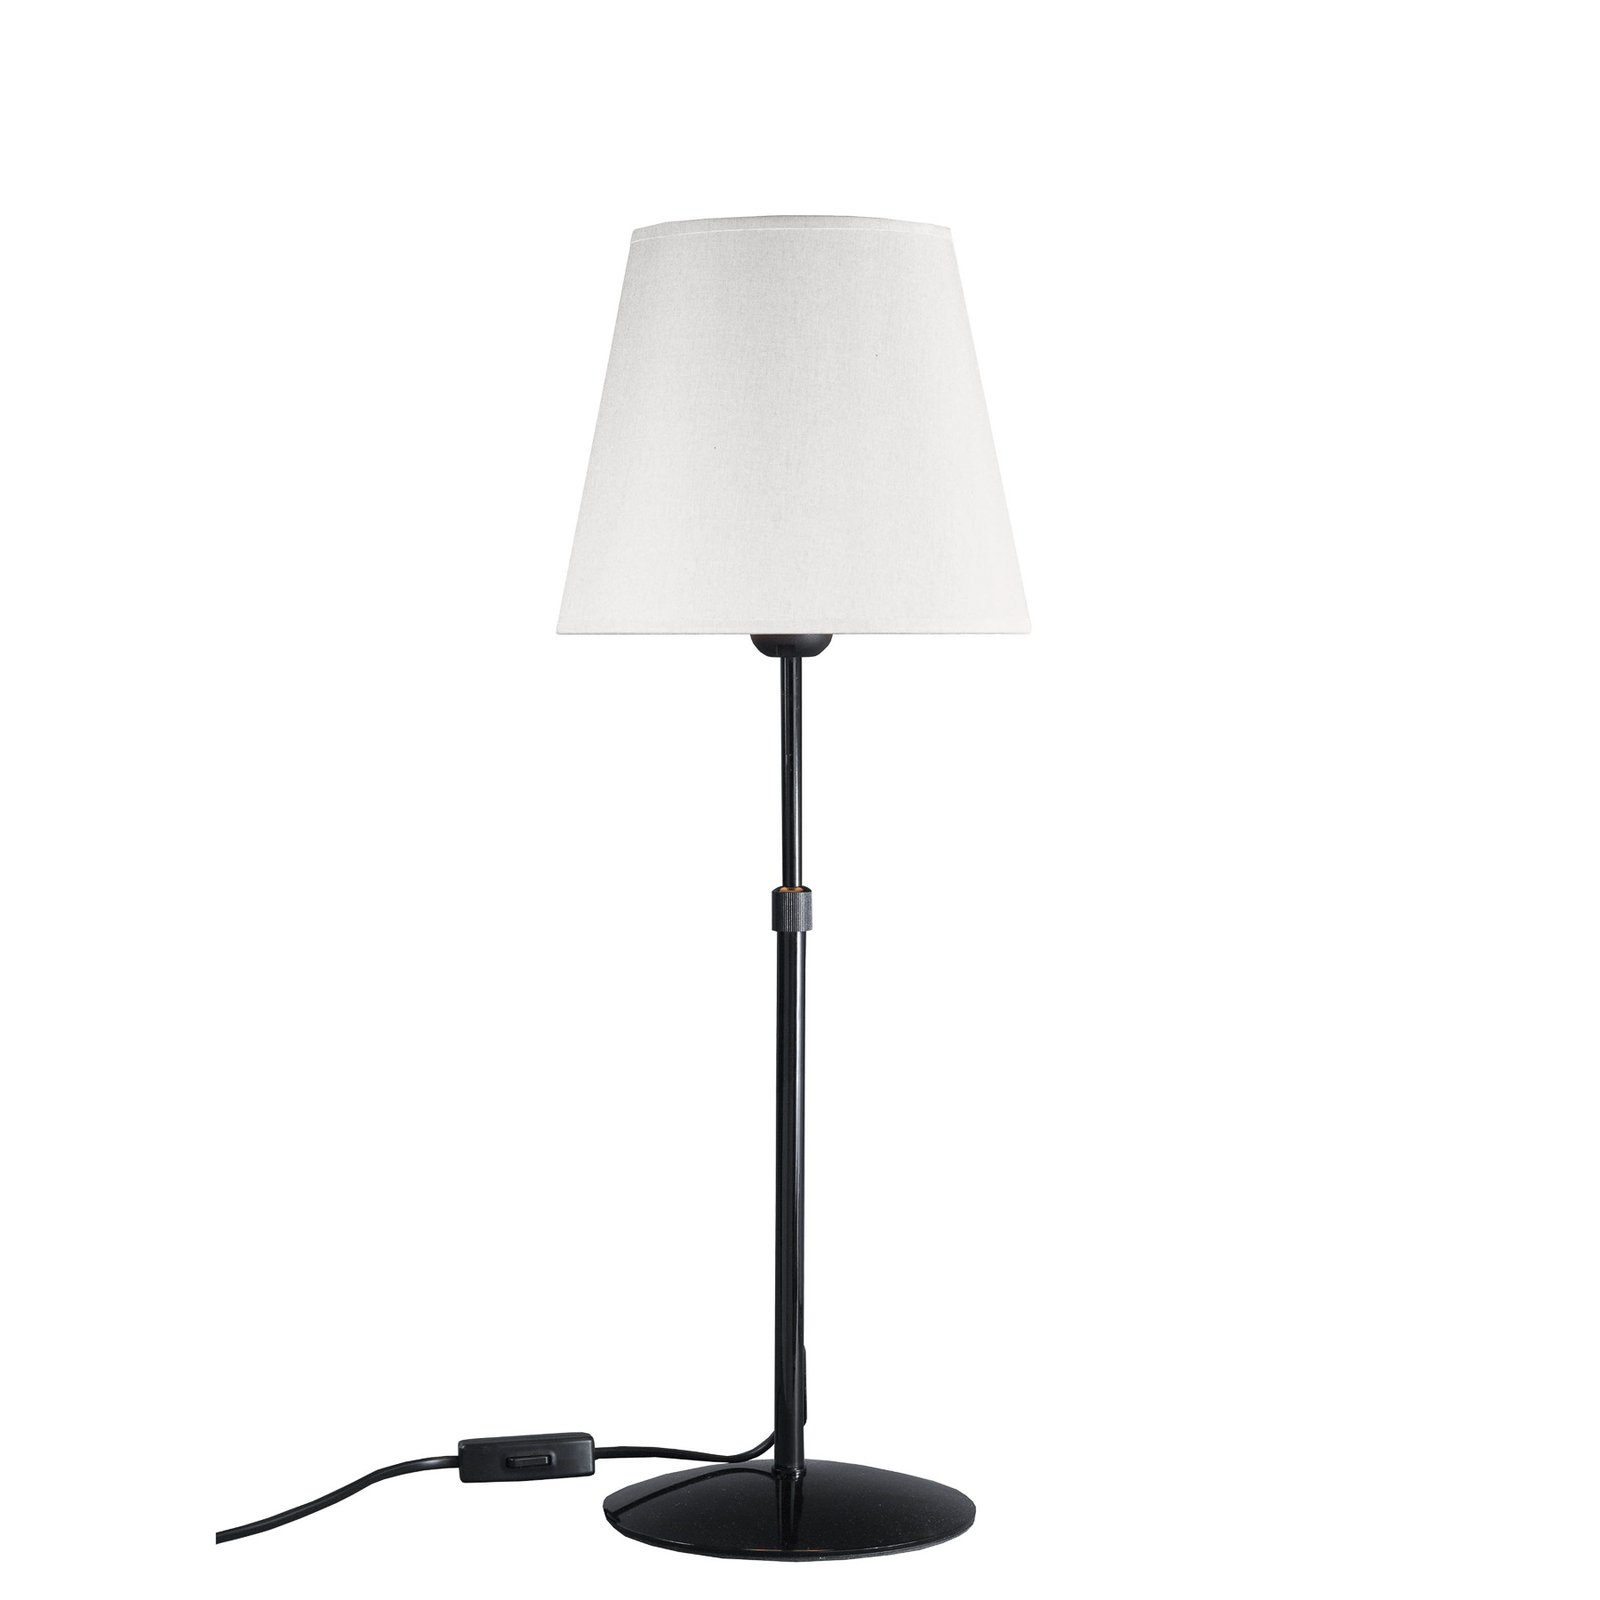 Aluminor Store lampada da tavolo, nero/bianco